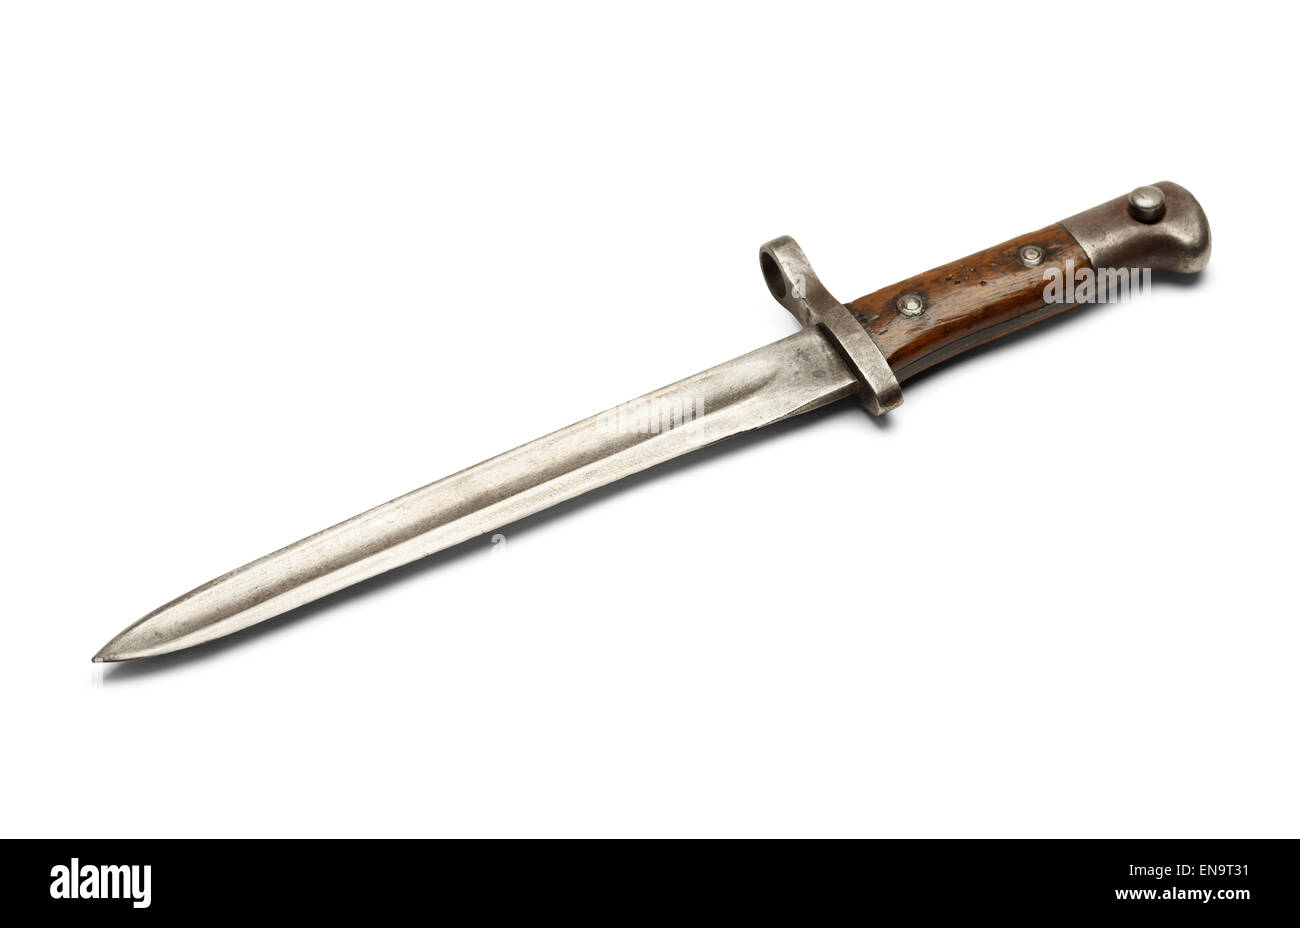 Edad Antigua Guerra Mundial cuchillo bayoneta aislado sobre fondo blanco. Foto de stock